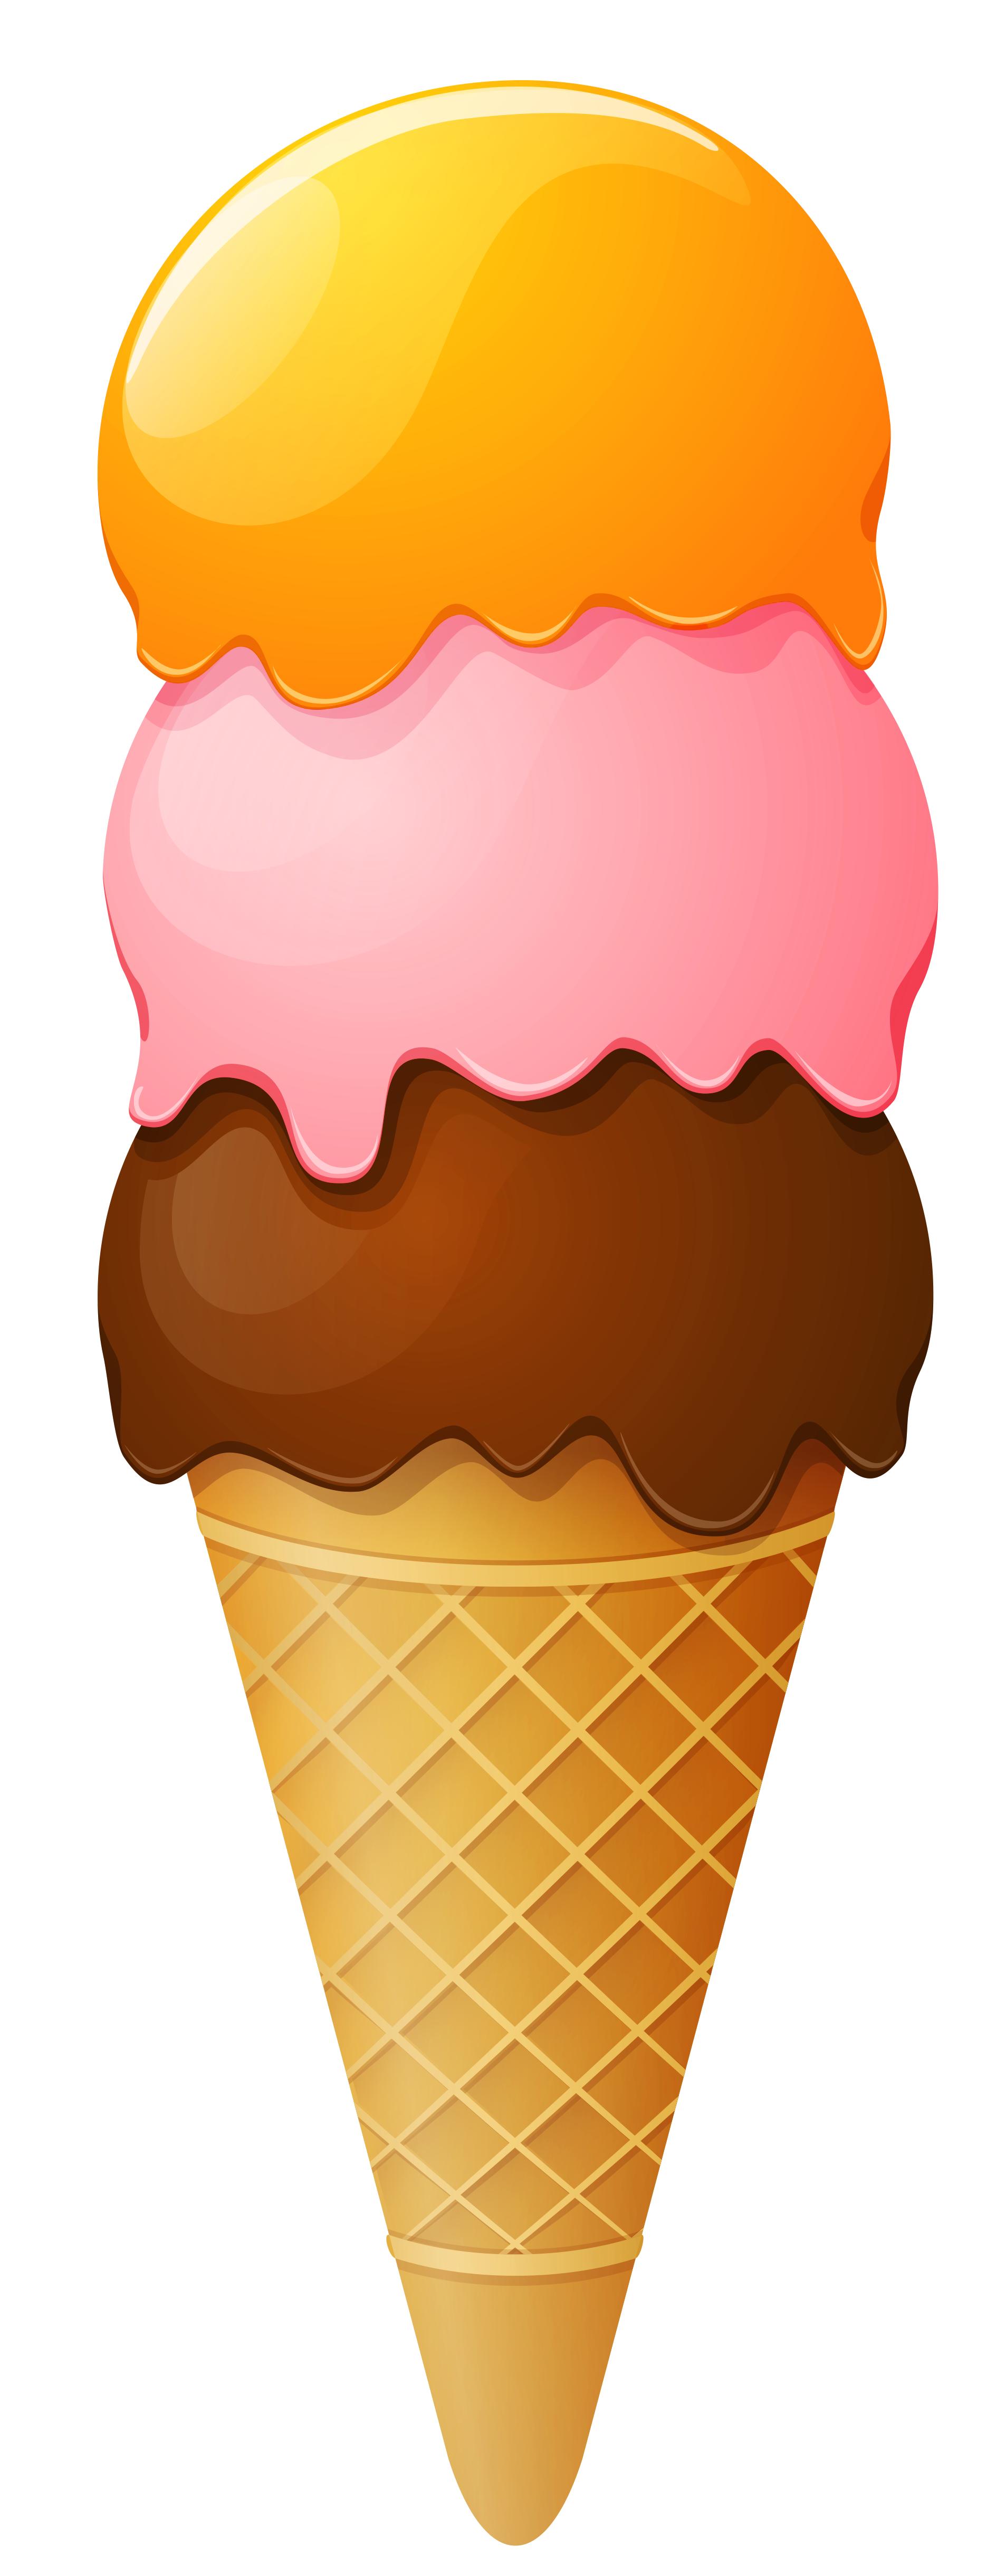 Ice Cream Images Clip Art - Tumundografico